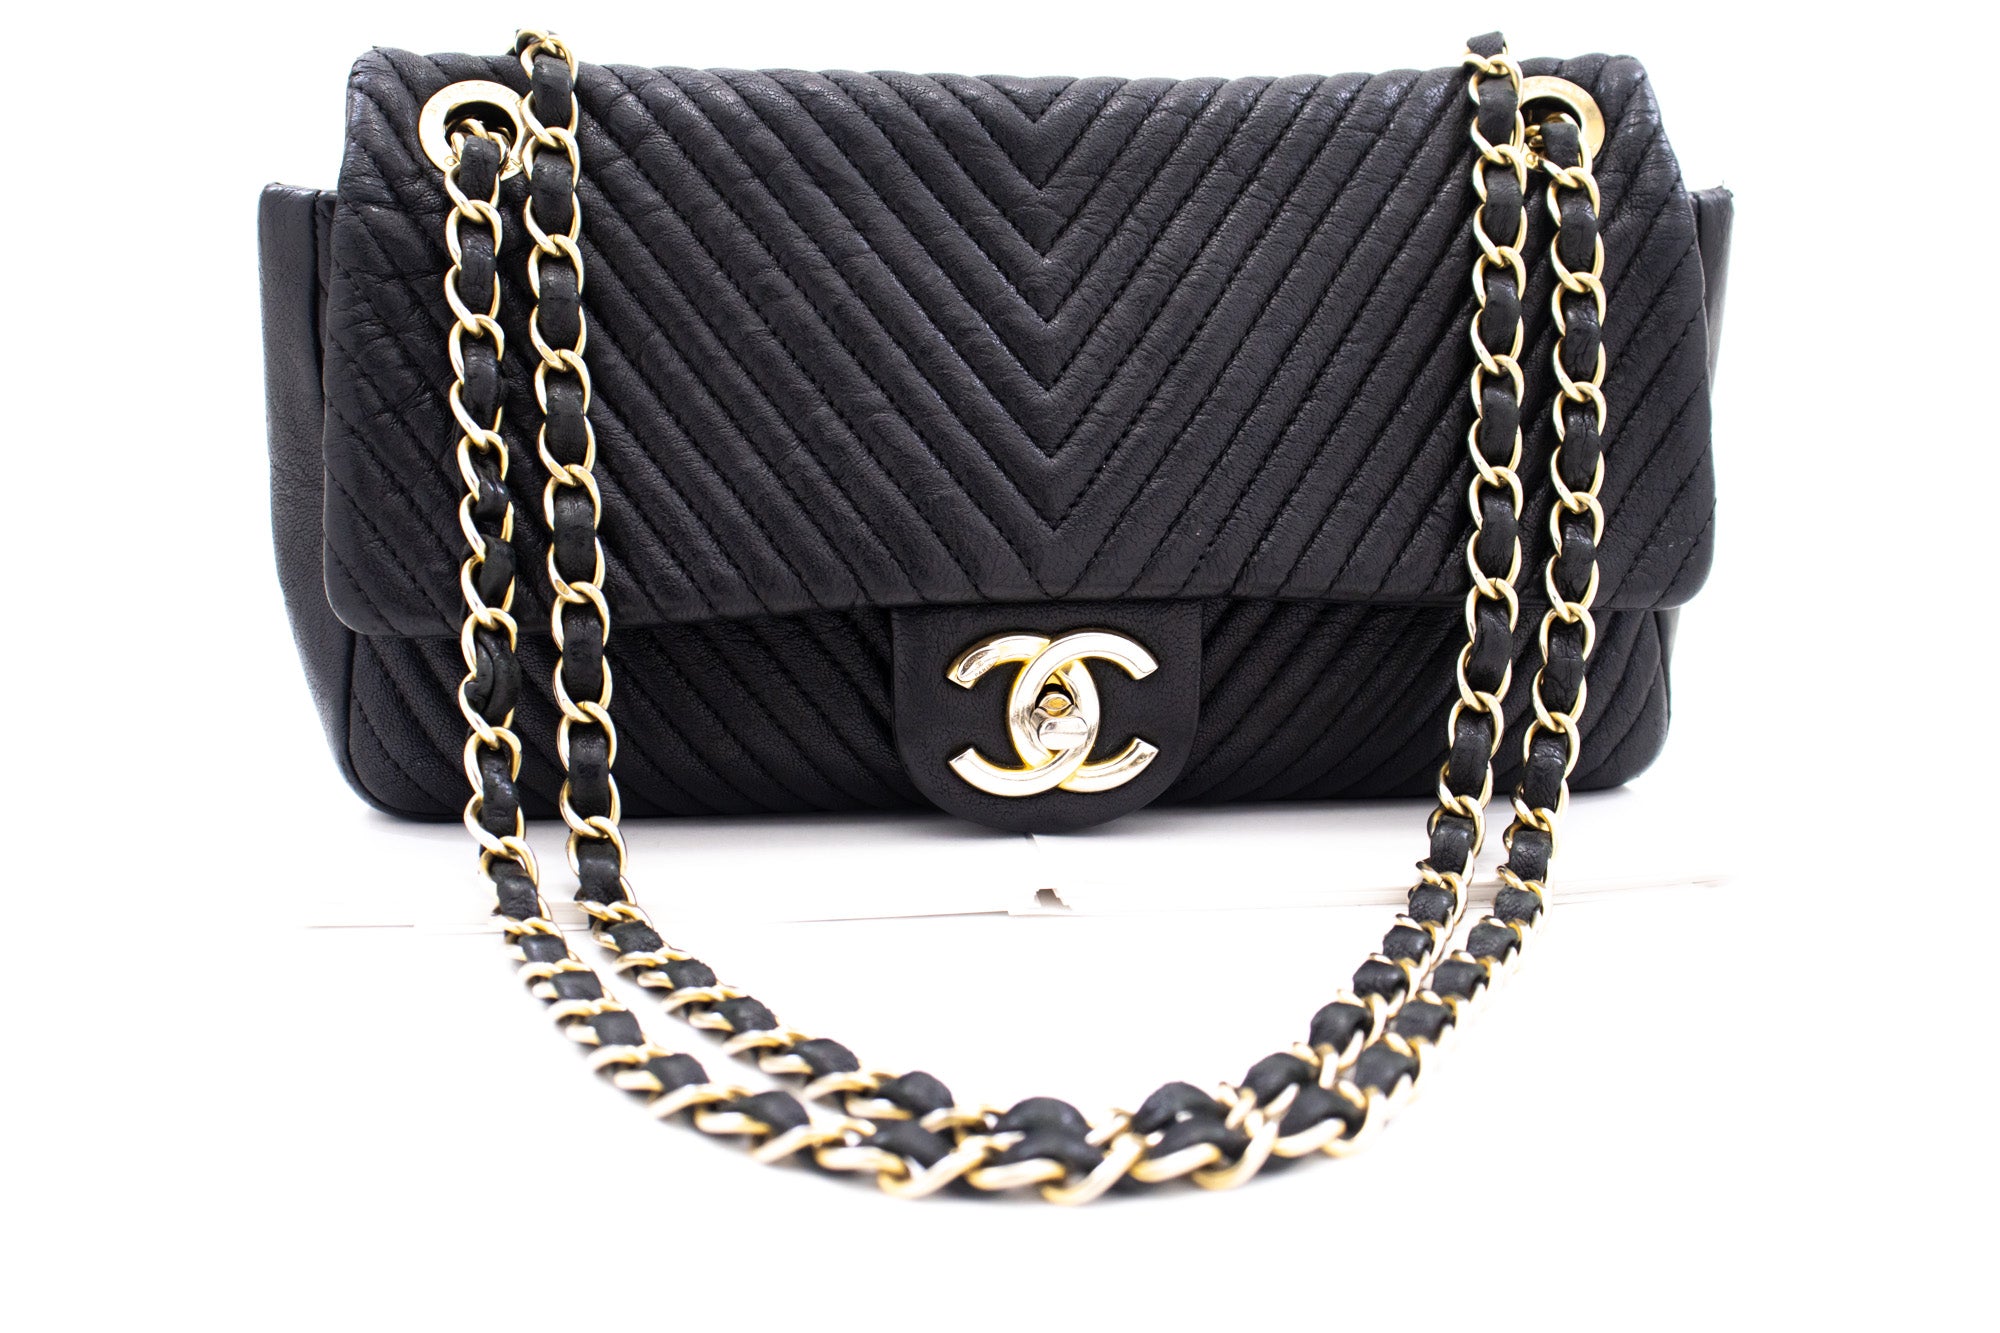 Chanel Black Surpique Chevron Leather Medium Flap Bag Chanel